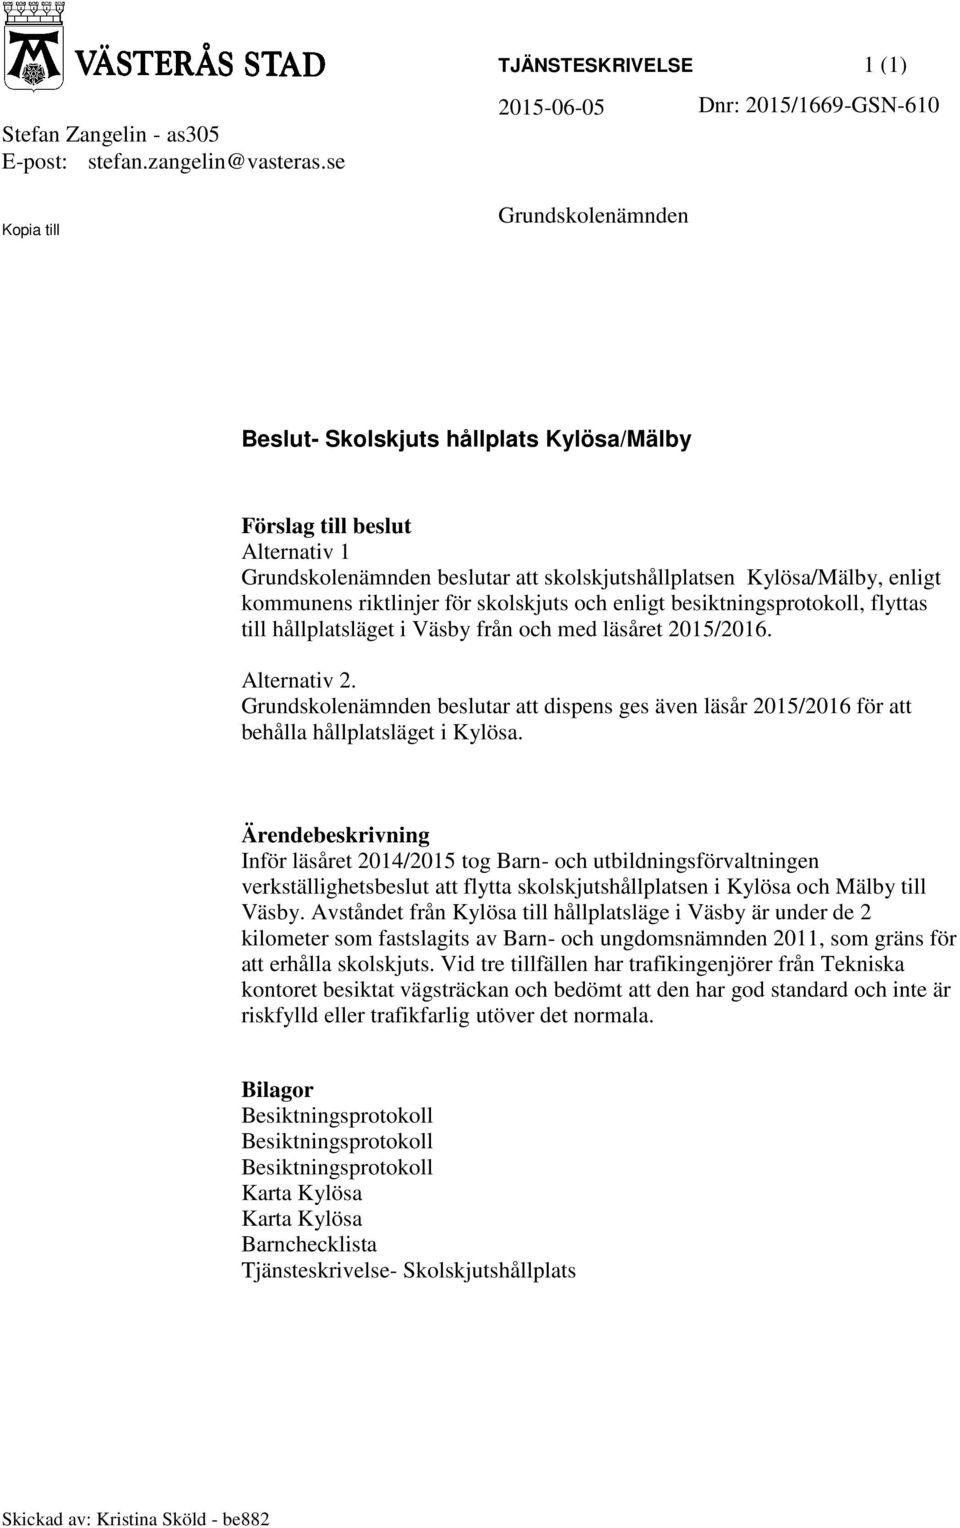 skolskjutshållplatsen Kylösa/Mälby, enligt kommunens riktlinjer för skolskjuts och enligt besiktningsprotokoll, flyttas till hållplatsläget i Väsby från och med läsåret 2015/2016. Alternativ 2.